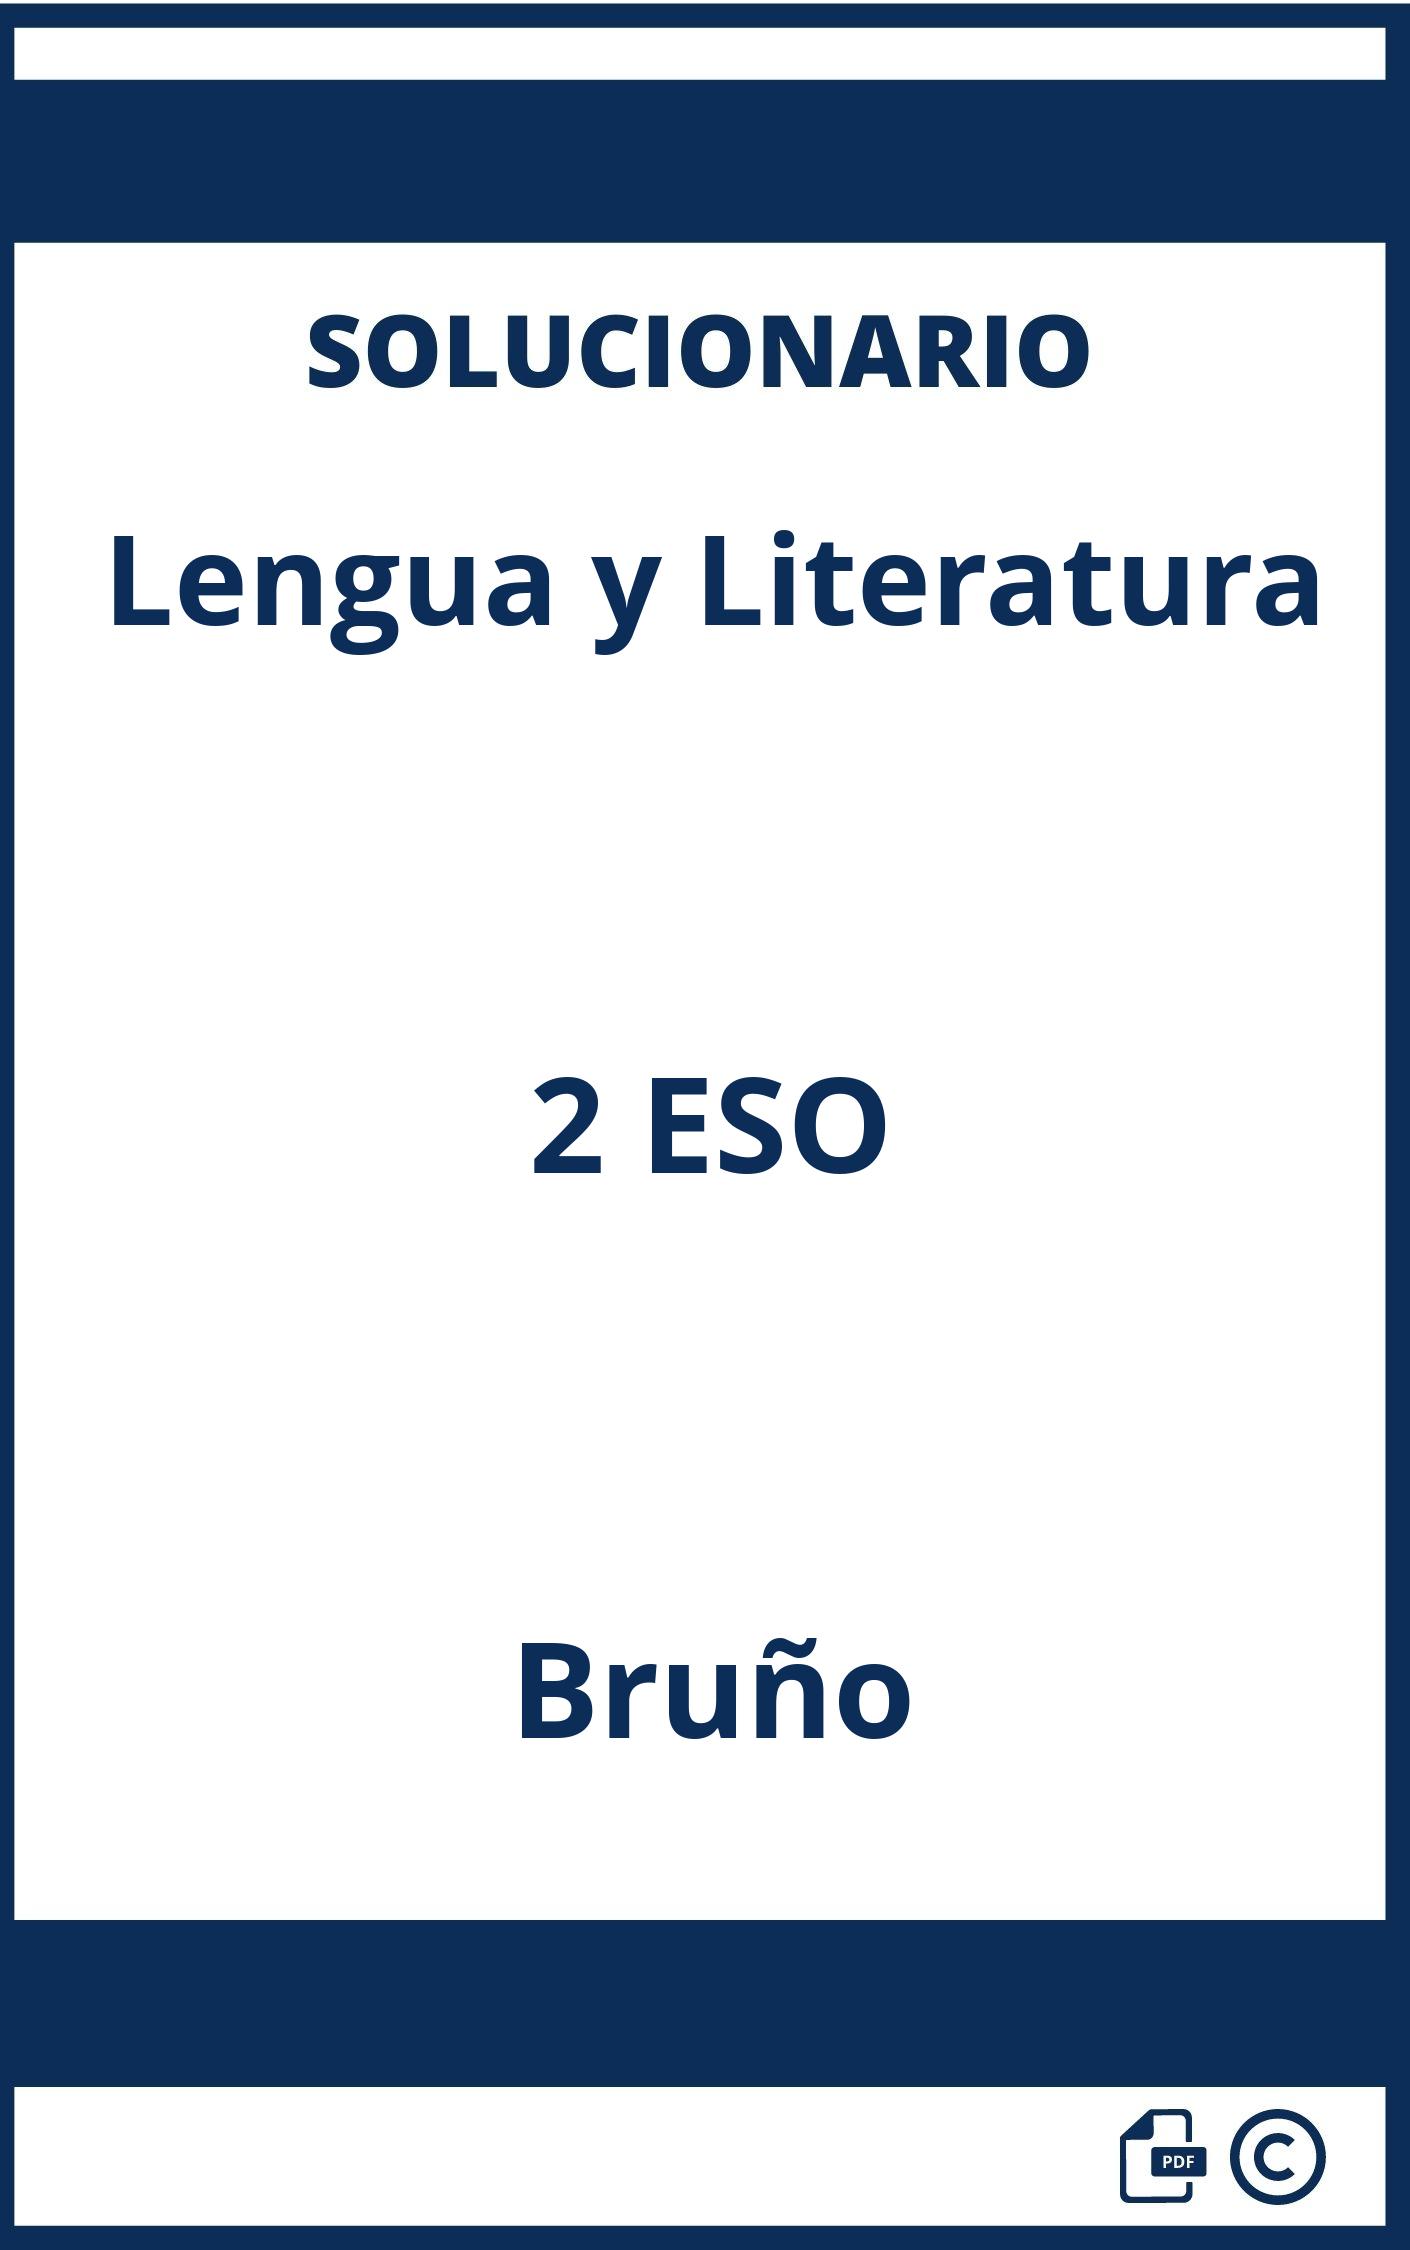 Solucionario Lengua y Literatura 2 ESO Bruño